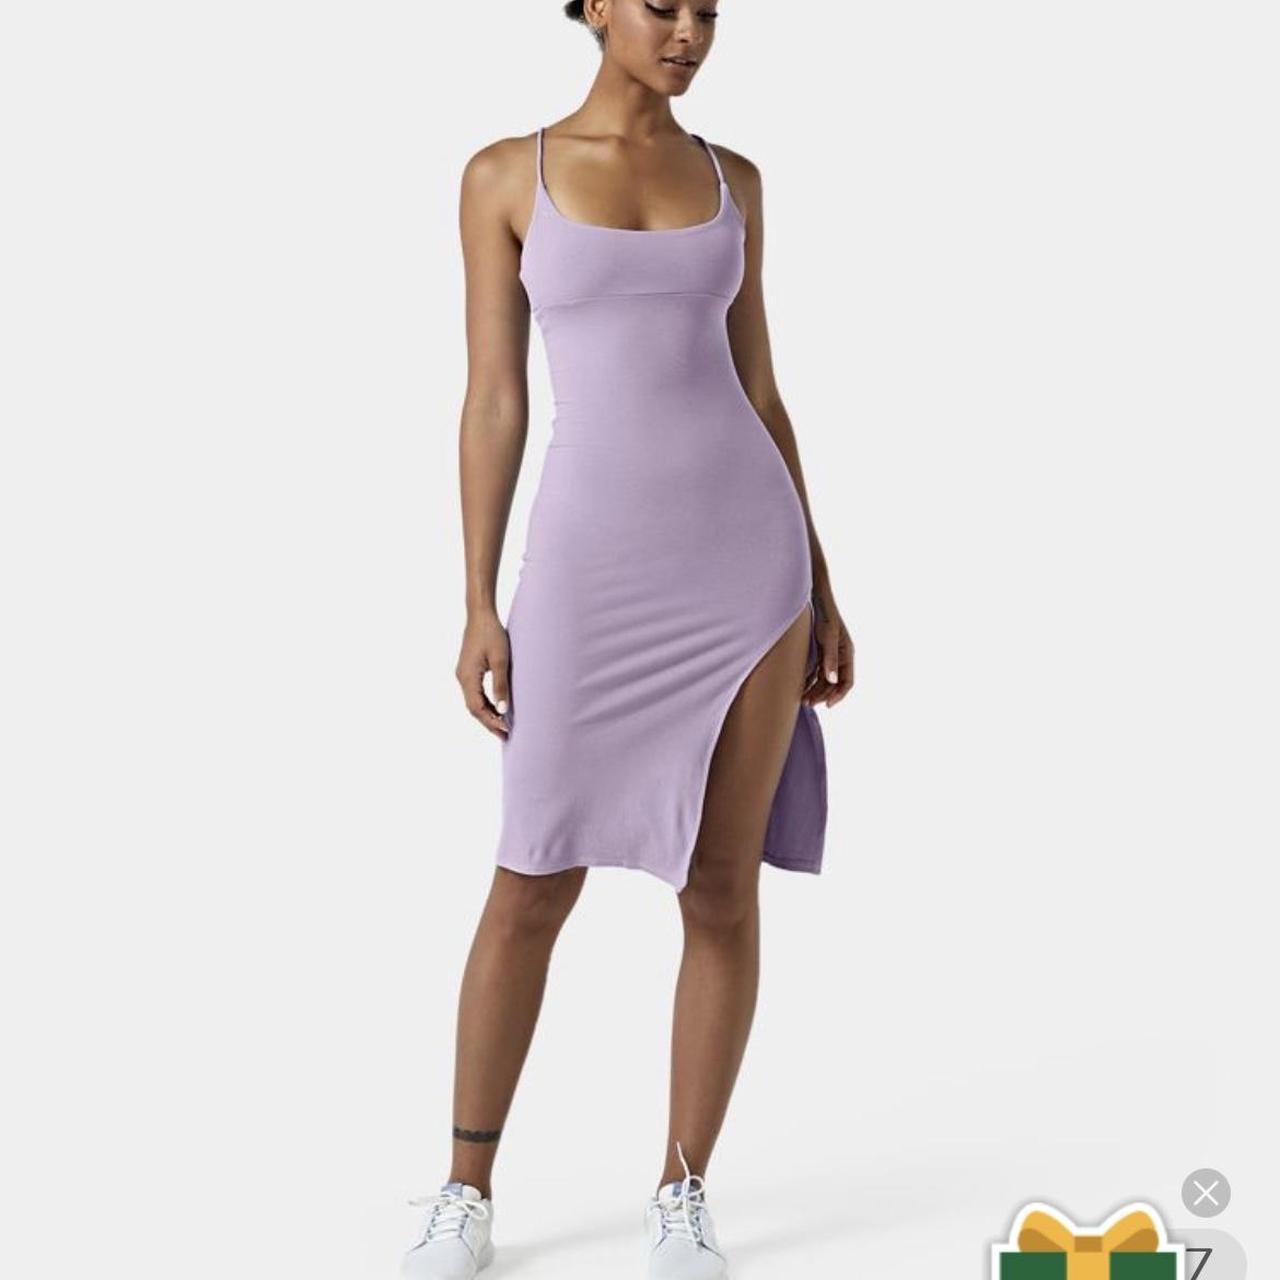 SUPER CUTE Halara Midi dress Size can fit XS-S it's - Depop